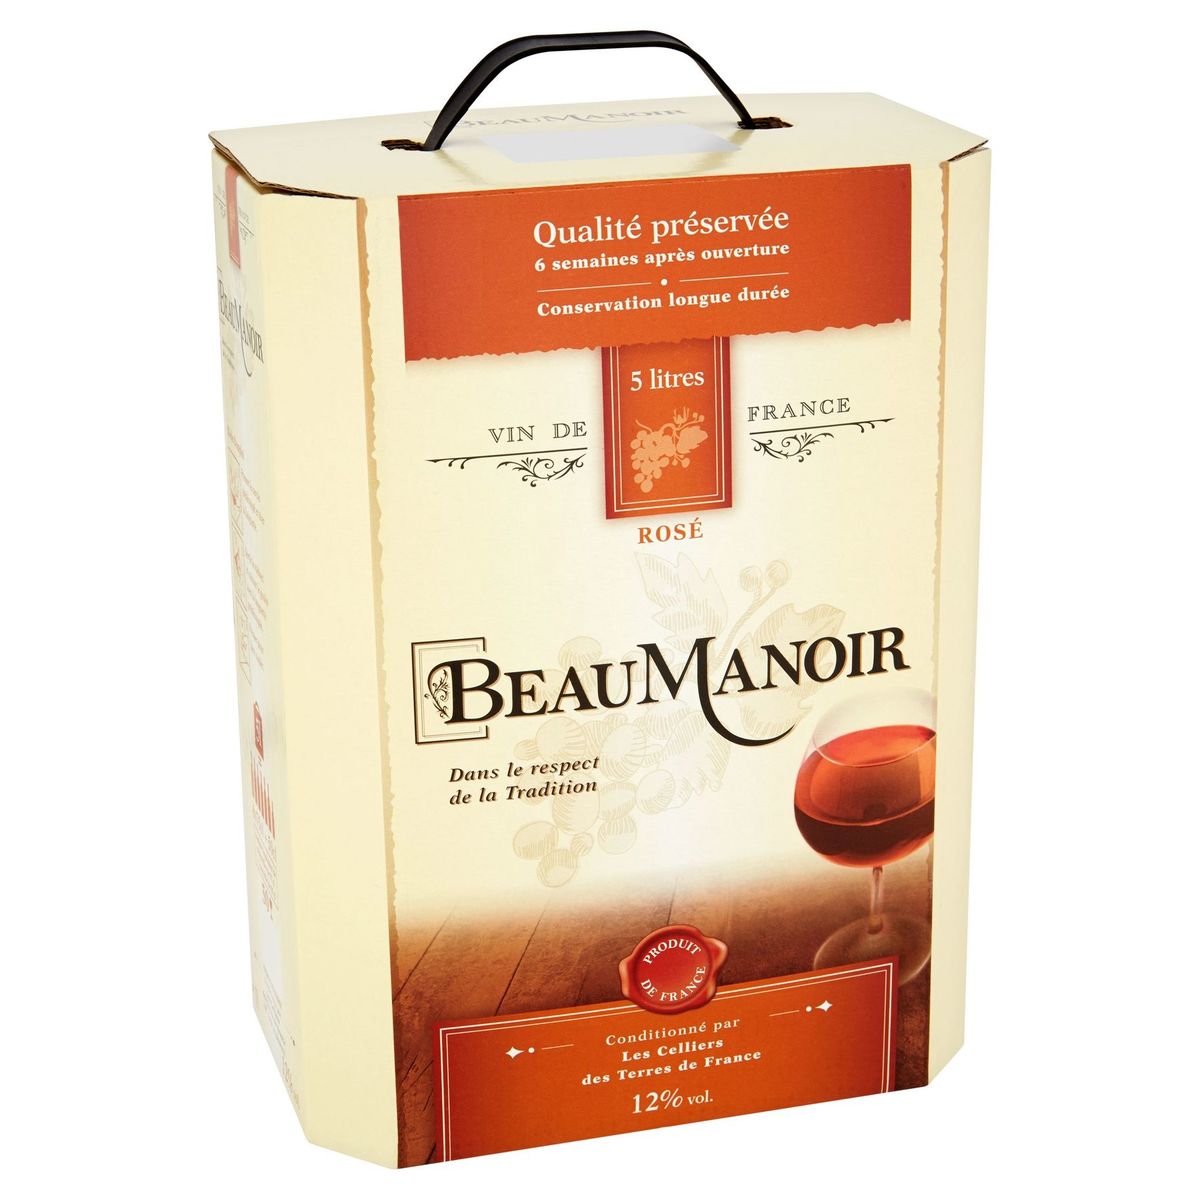 Beaumanoir Vin de France rosé 5 litres